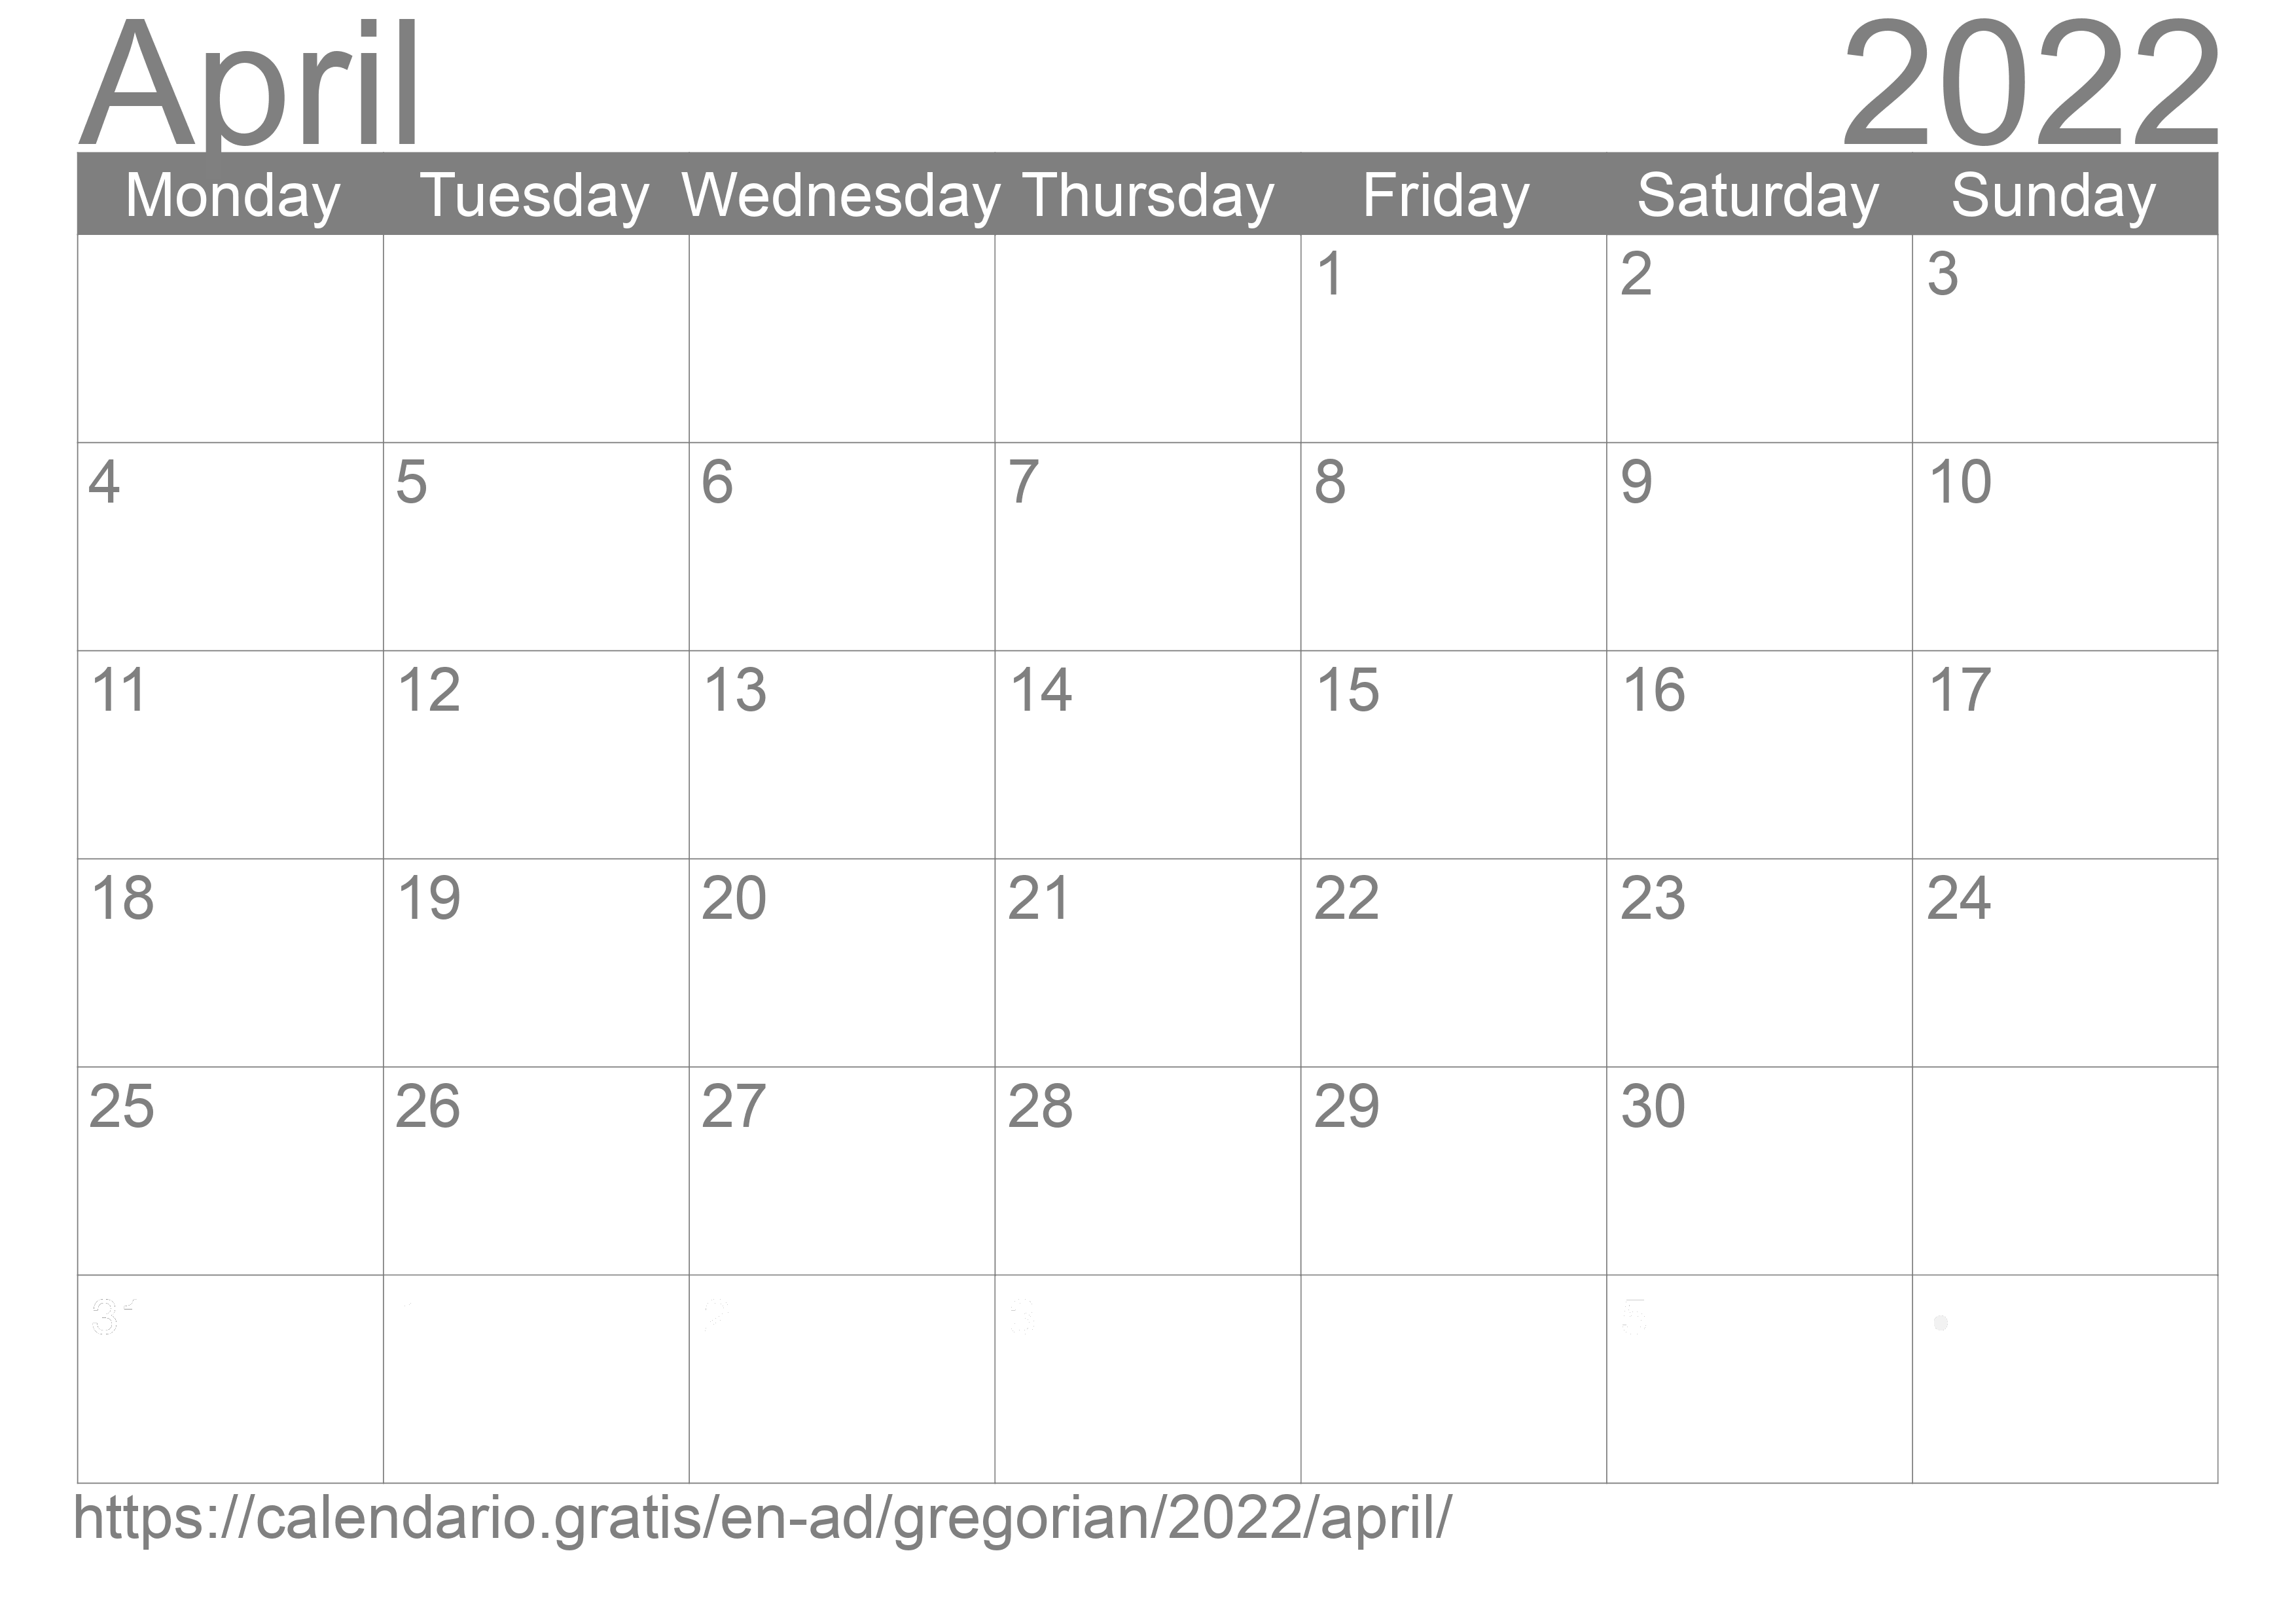 Calendar April 2022 to print